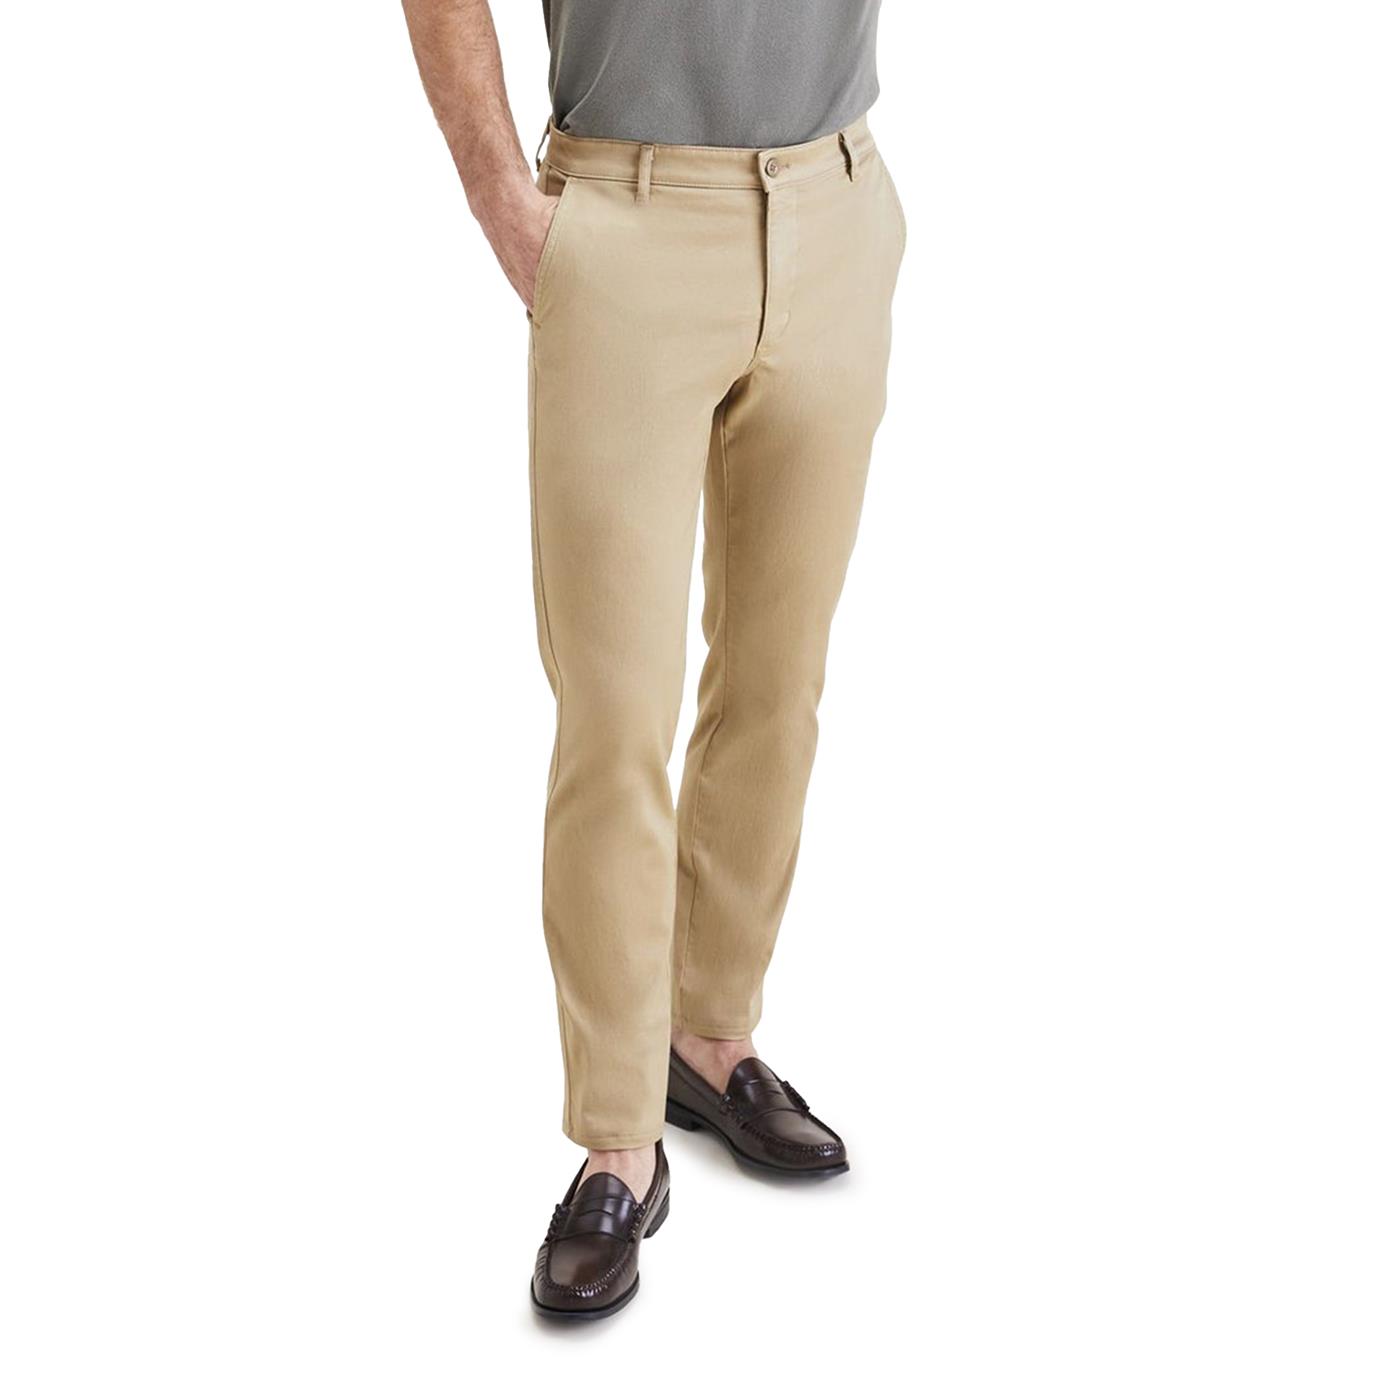 Pantalones Original Opp Slim Beige de Hombre A4862-0000 | CamaragrancanariaShops